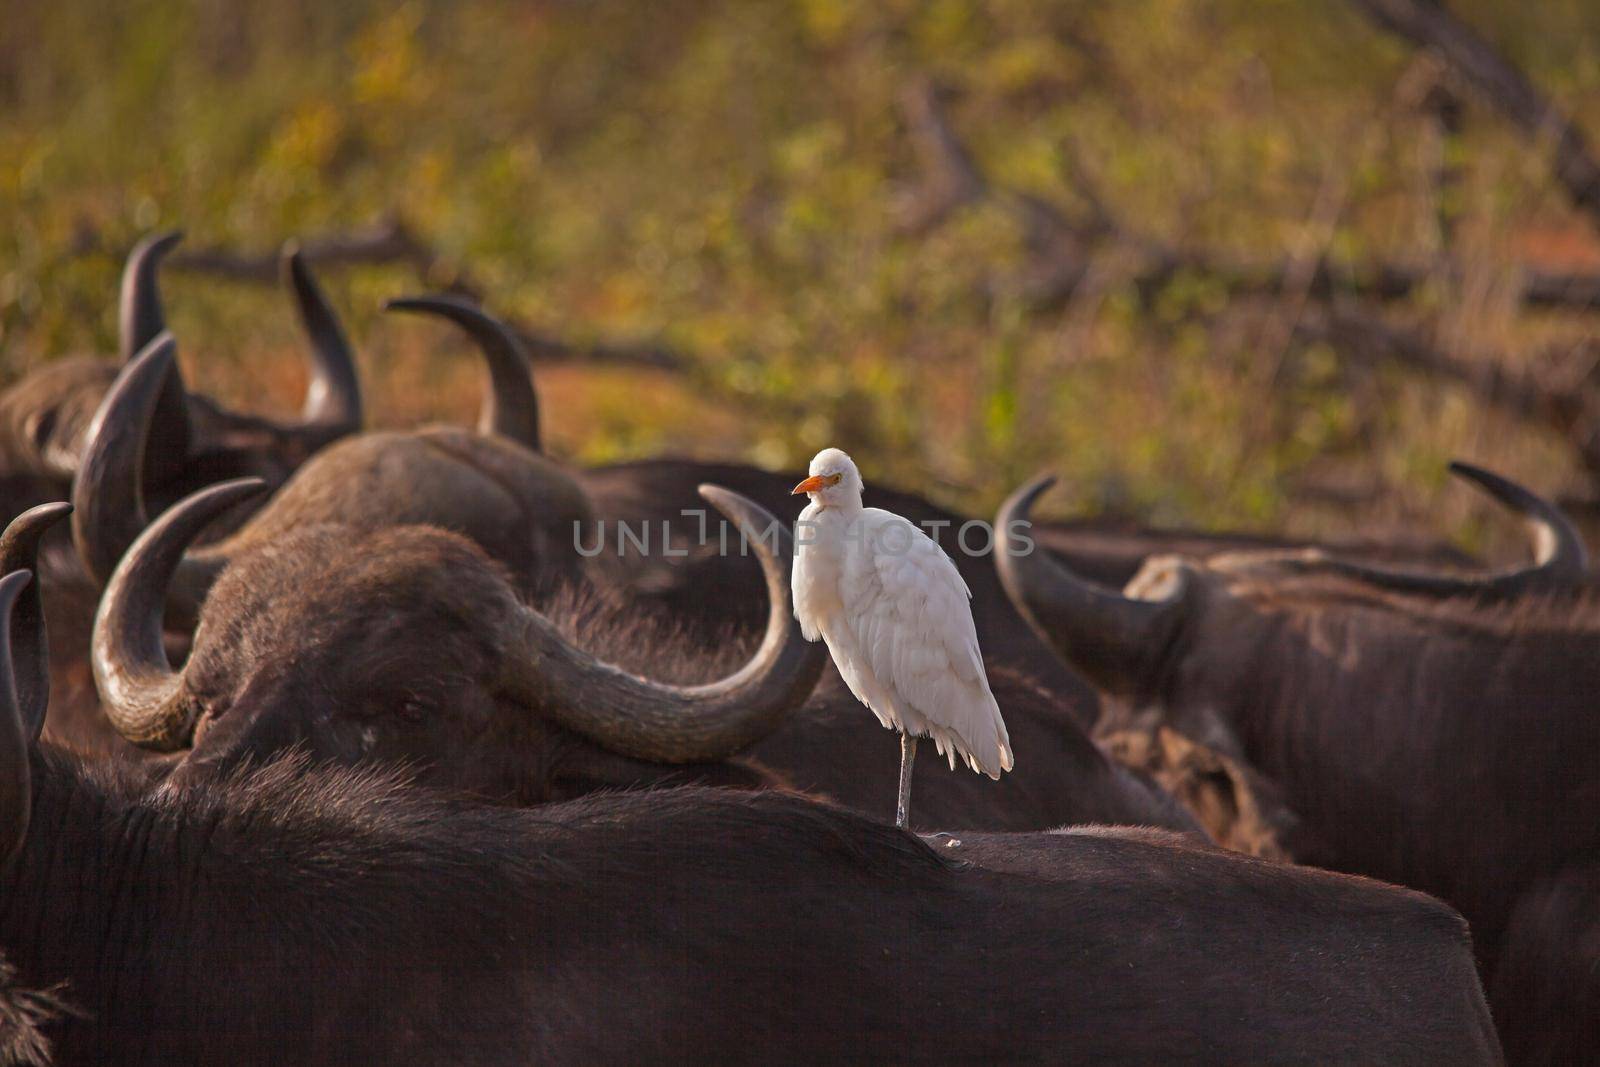 White Egret on Back Buffalo 14778 by kobus_peche